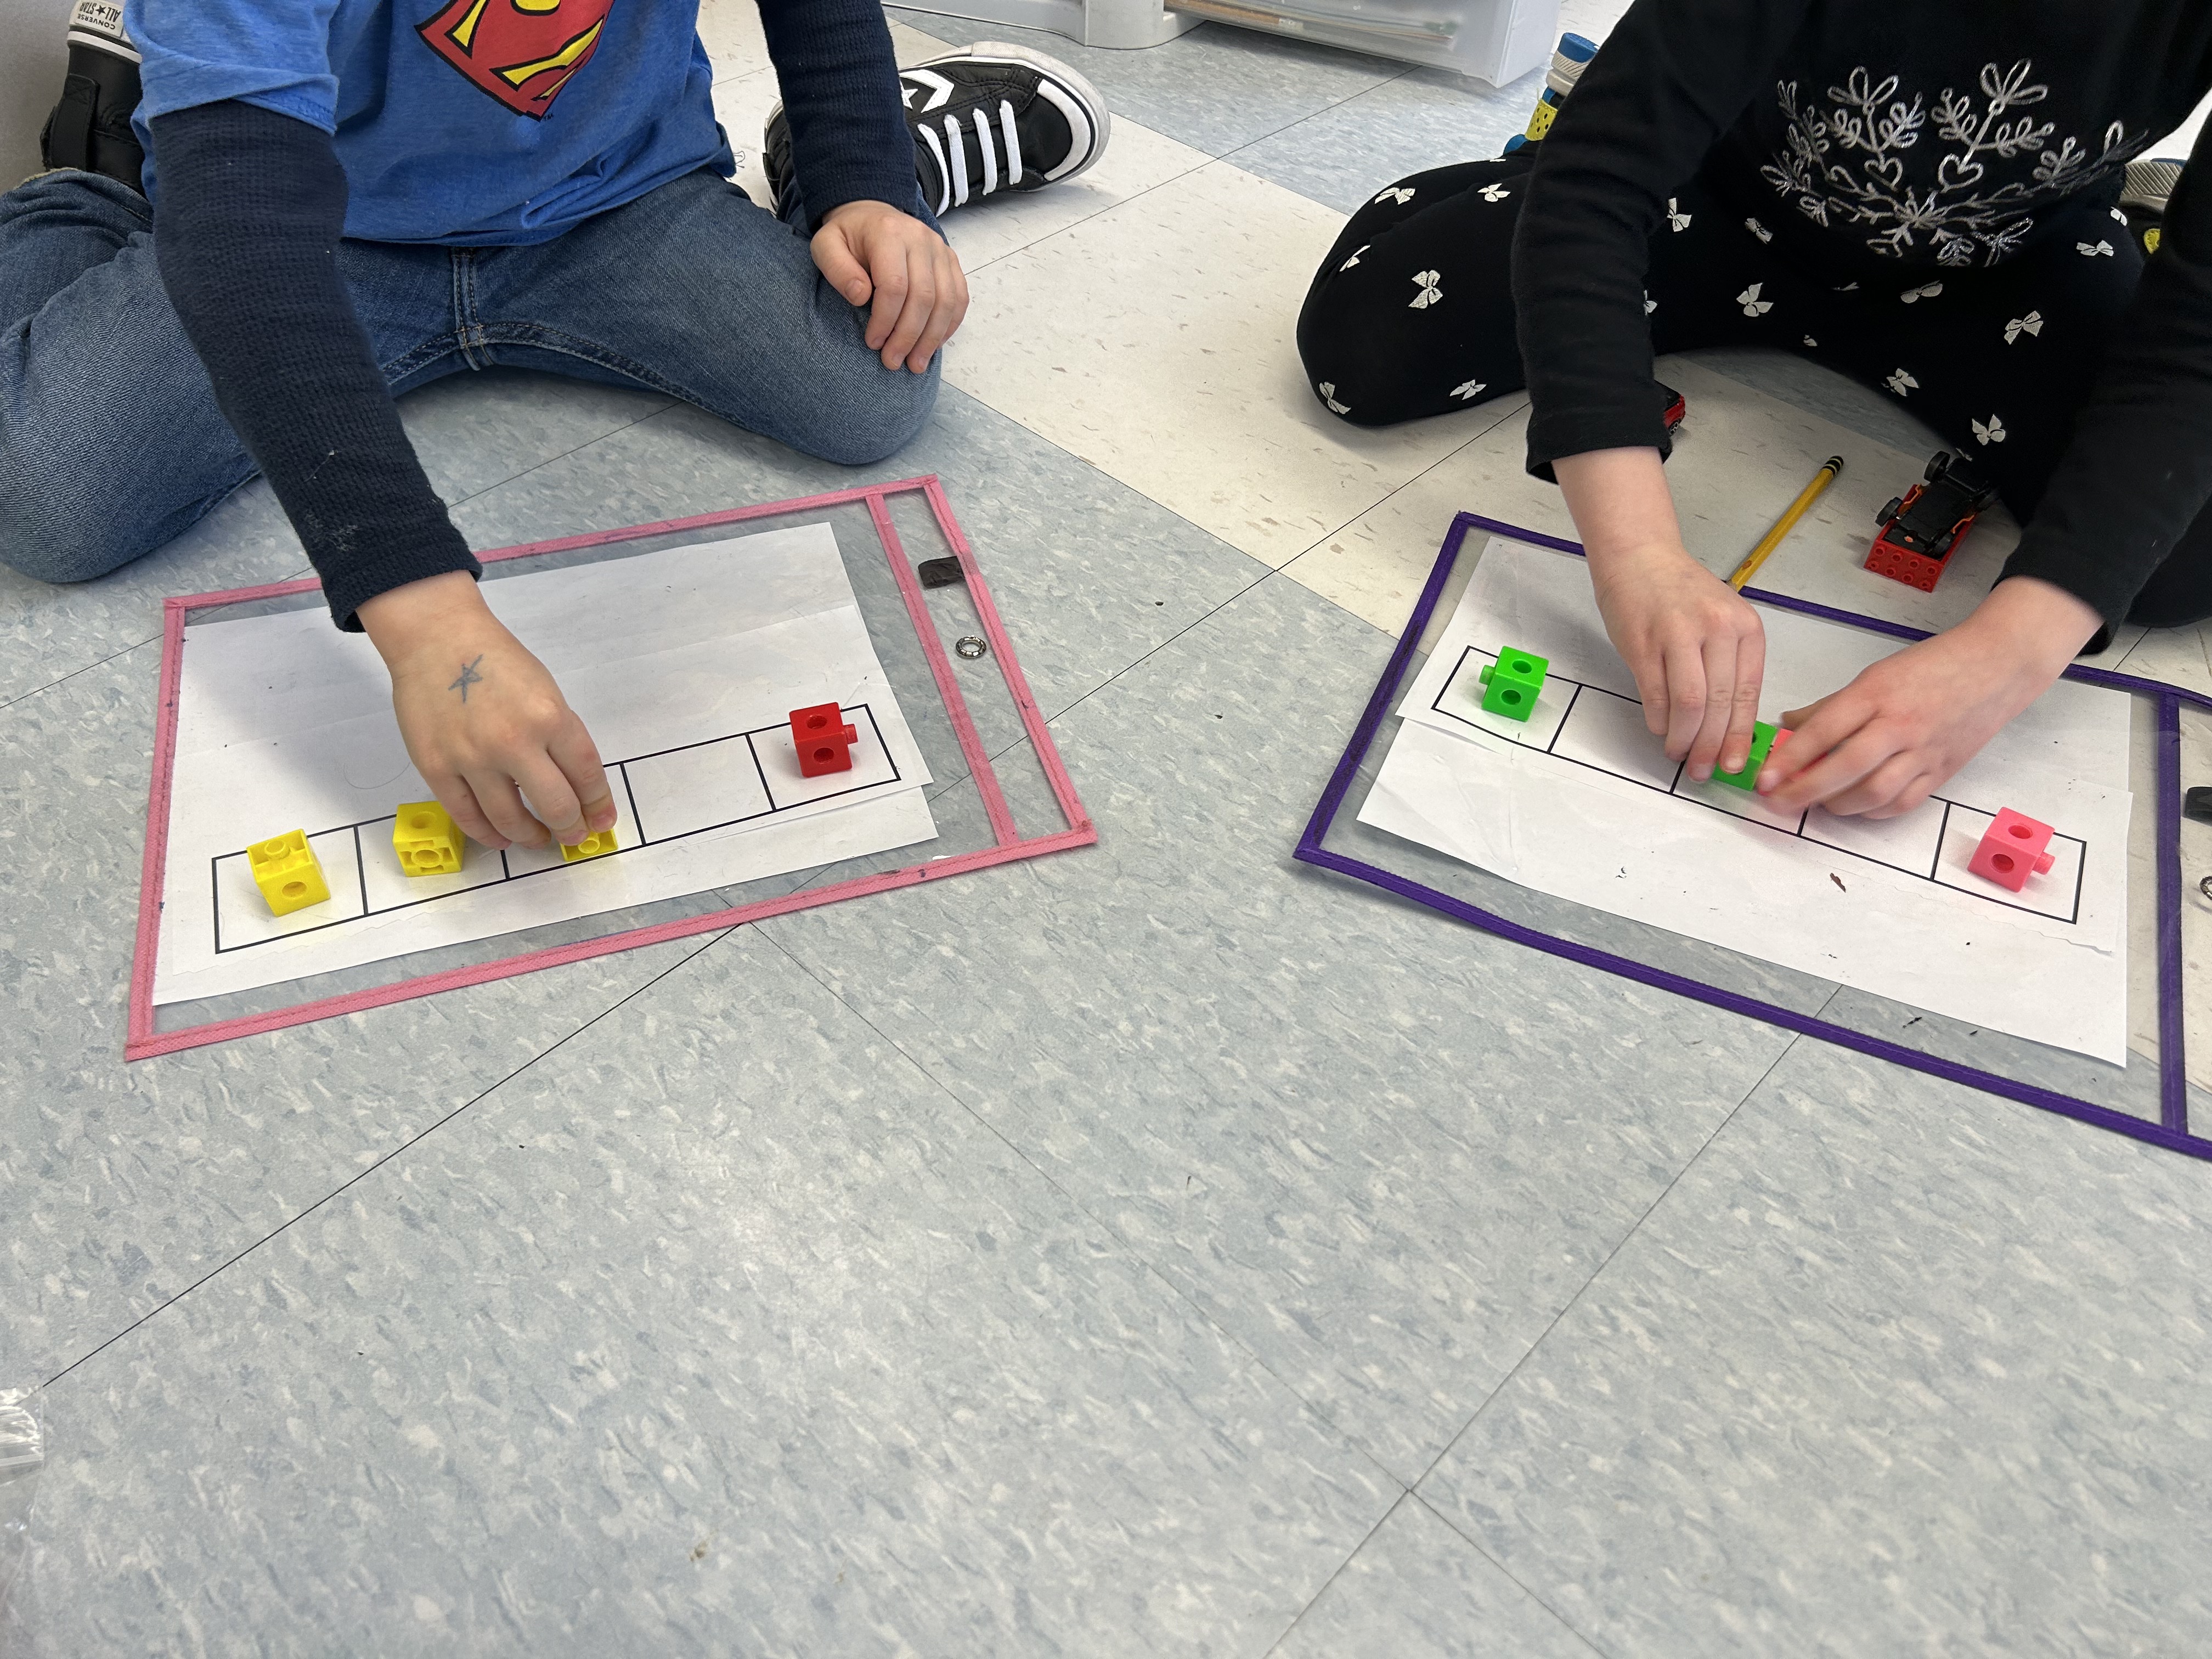 En salle de classe, deux jeunes garçons assis en tailleur jouent à empiler des jetons sur des cartes à cases.